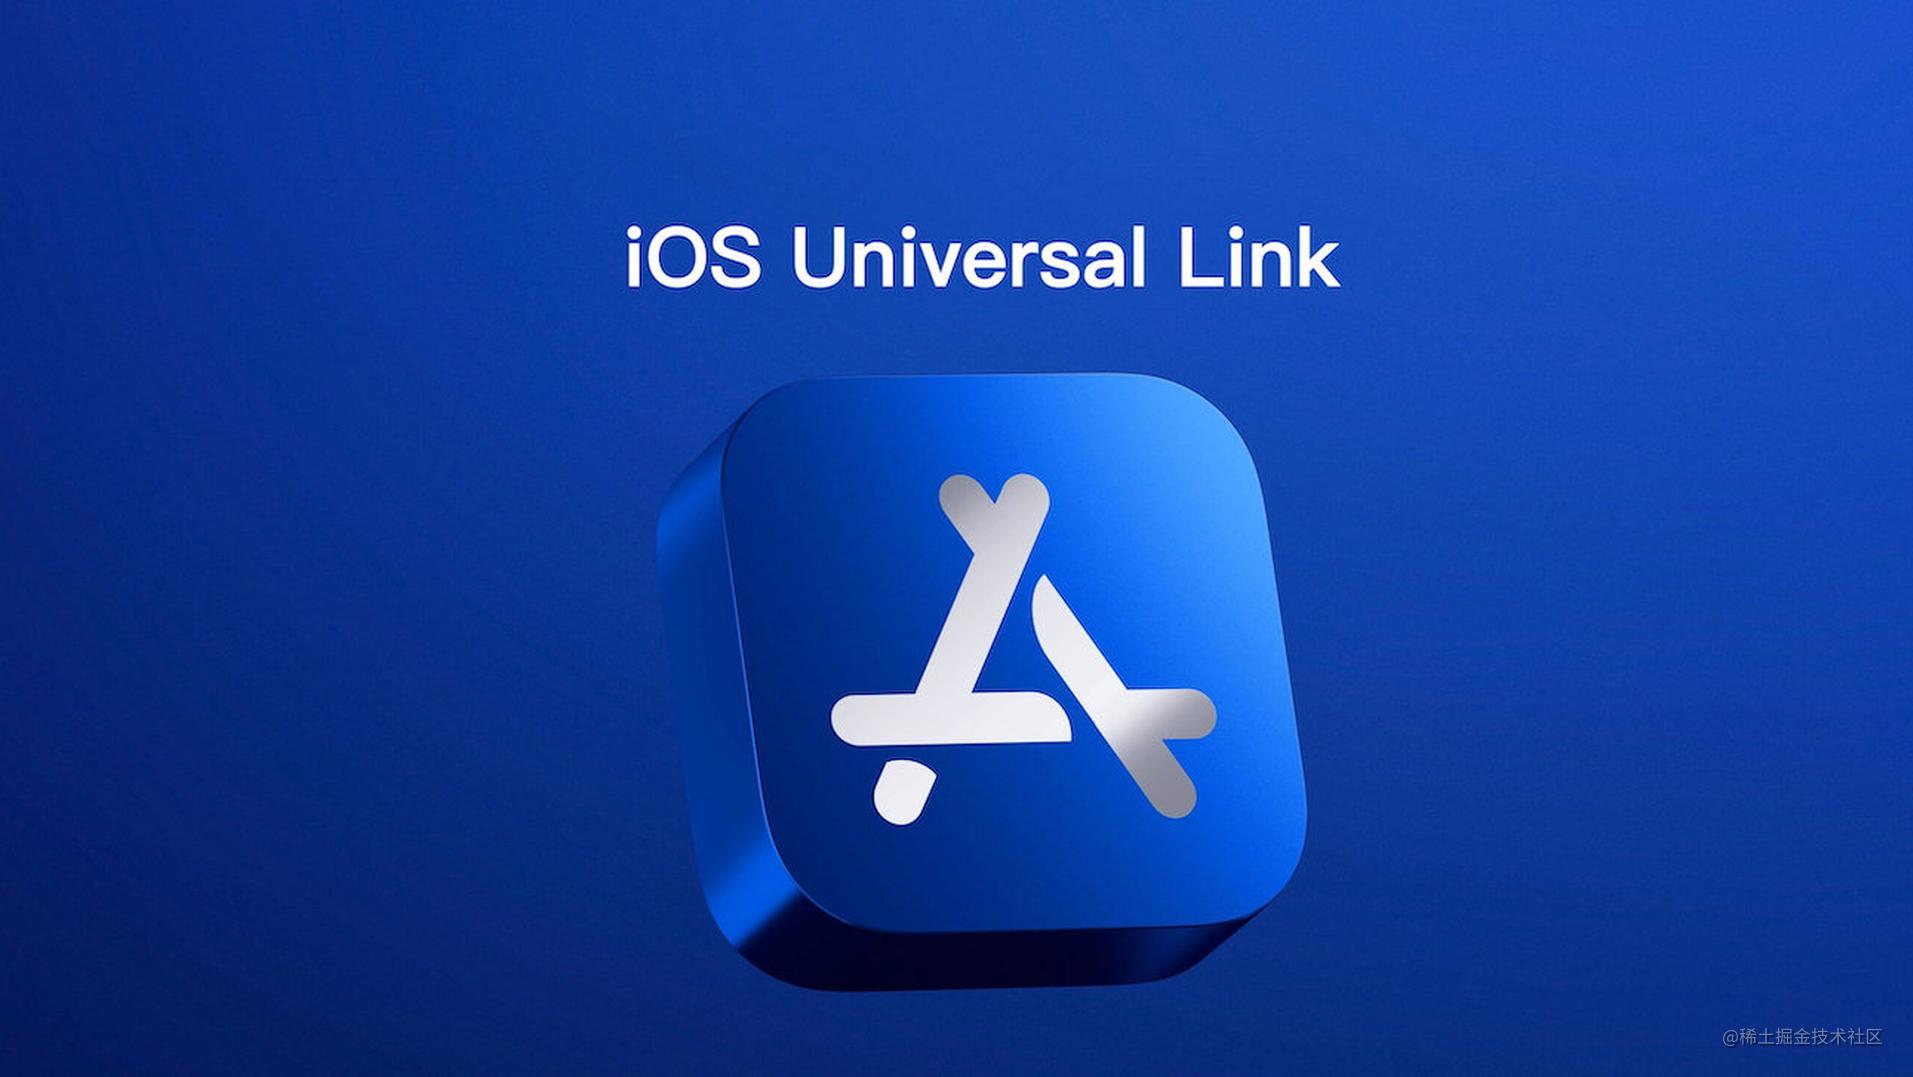 趣谈 iOS Universal Link